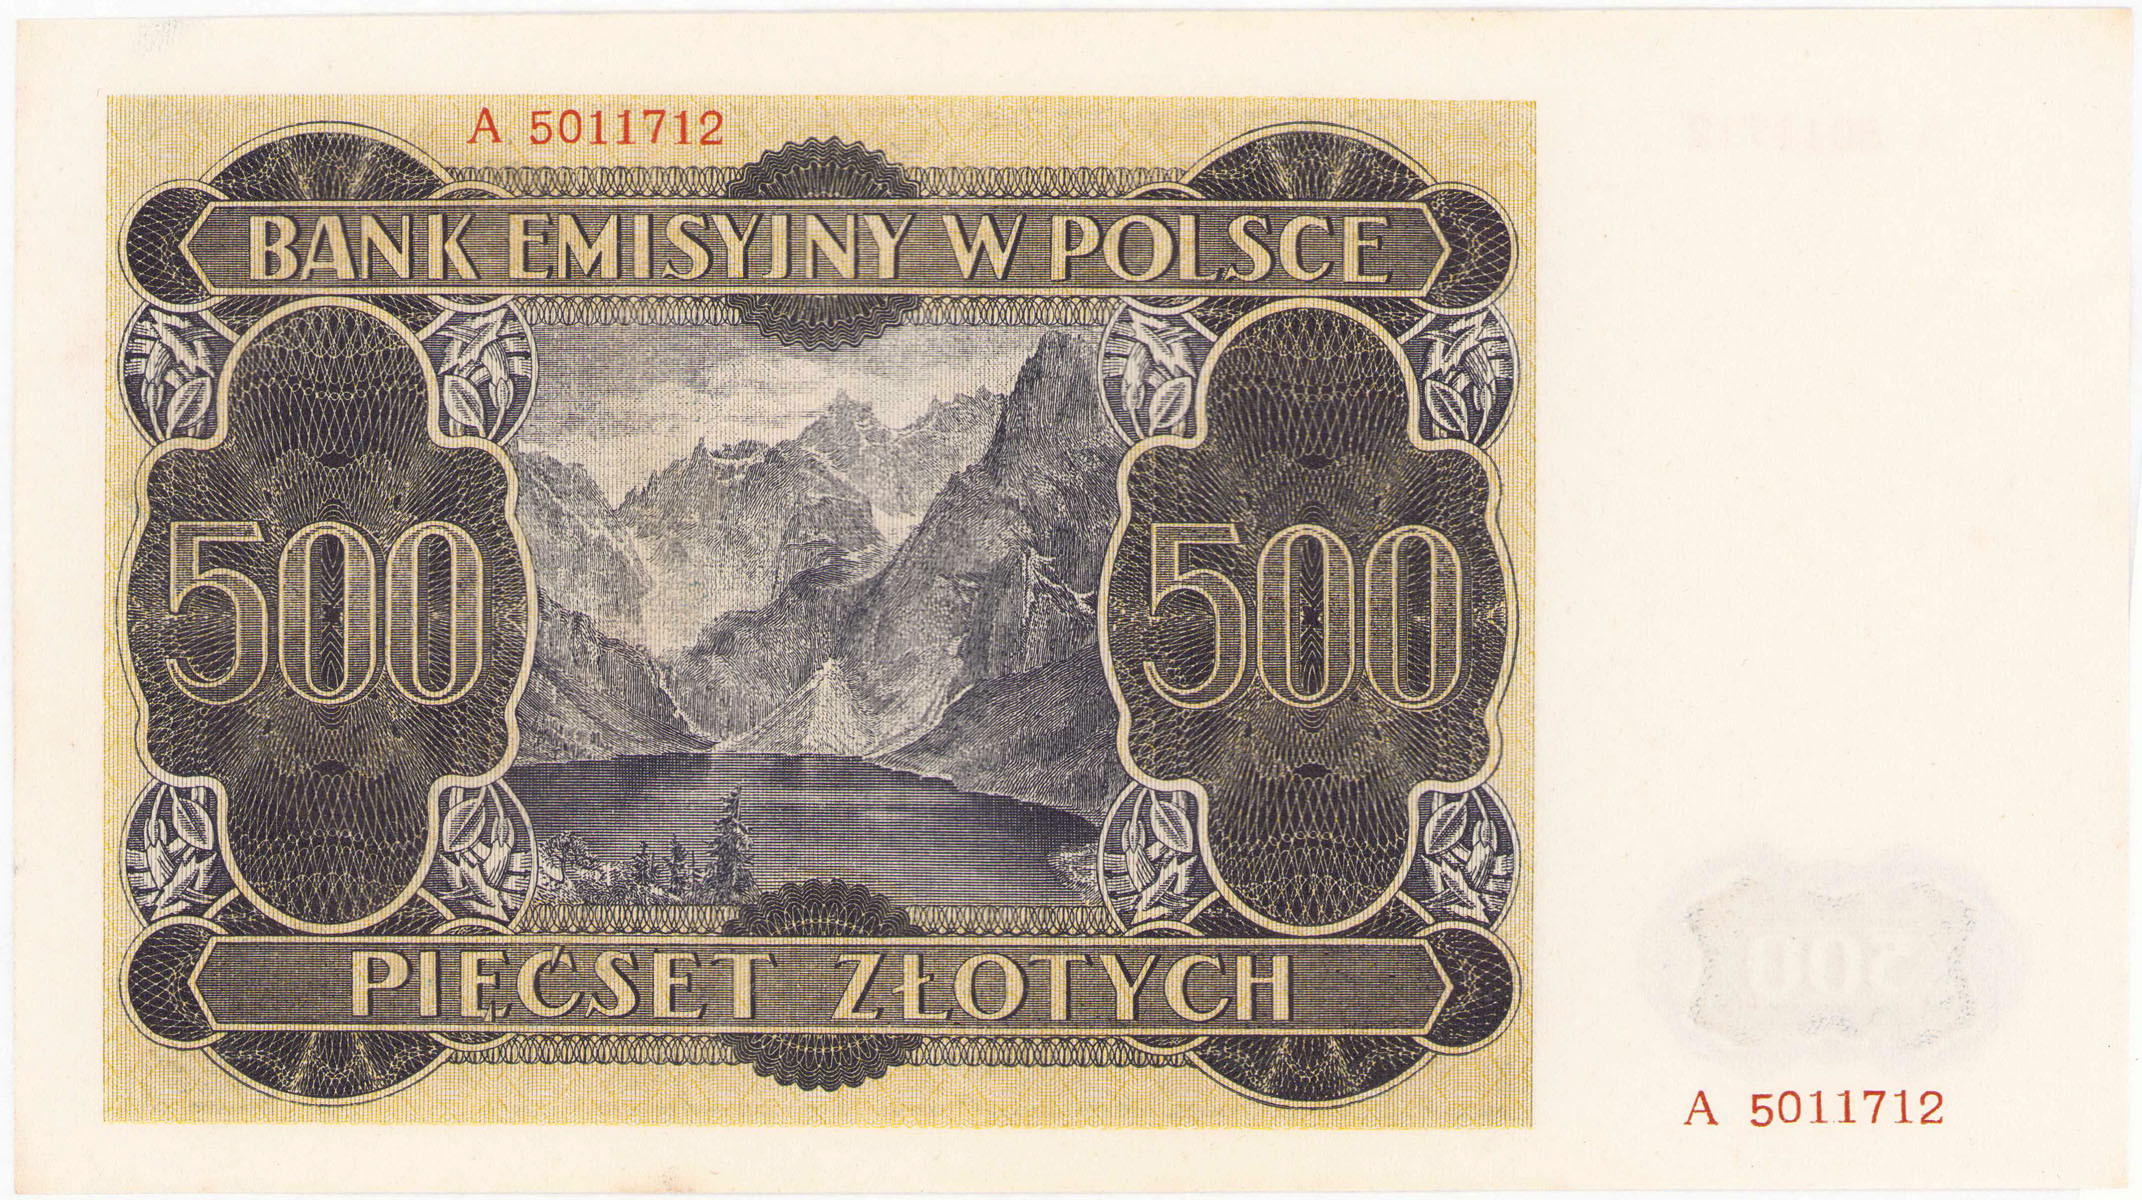 500 złotych 1940  - seria A